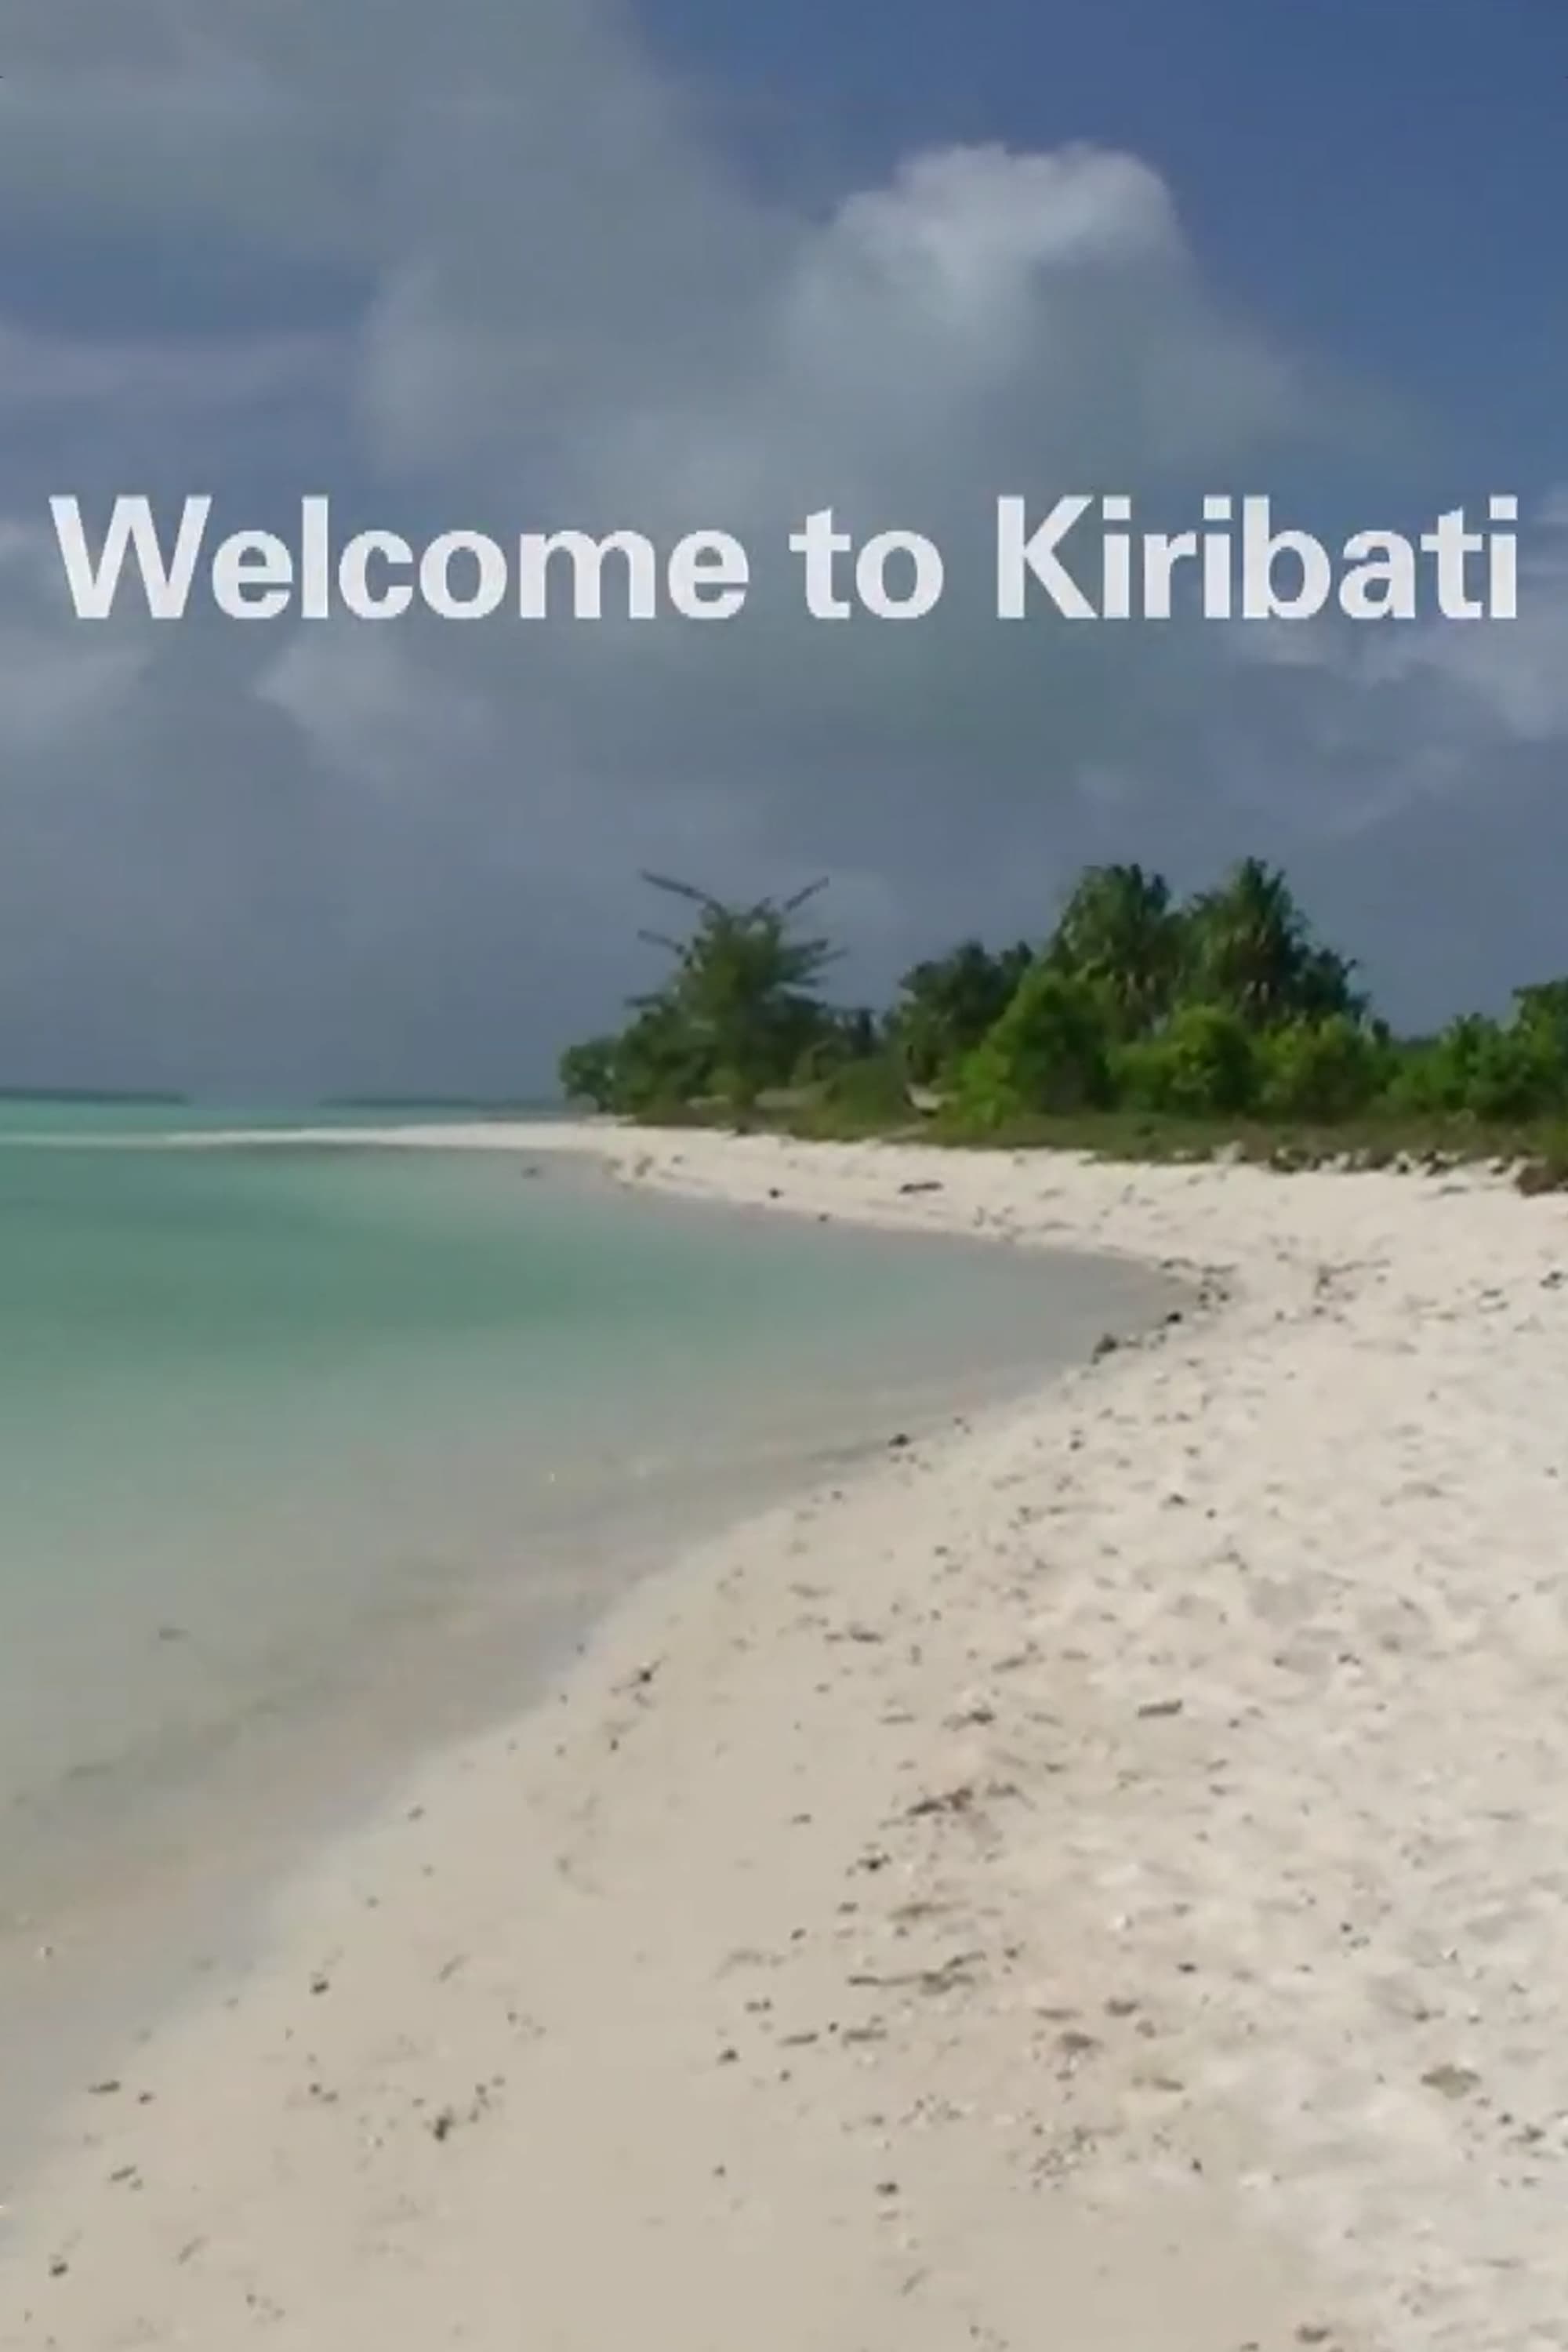 Welcome to Kiribati